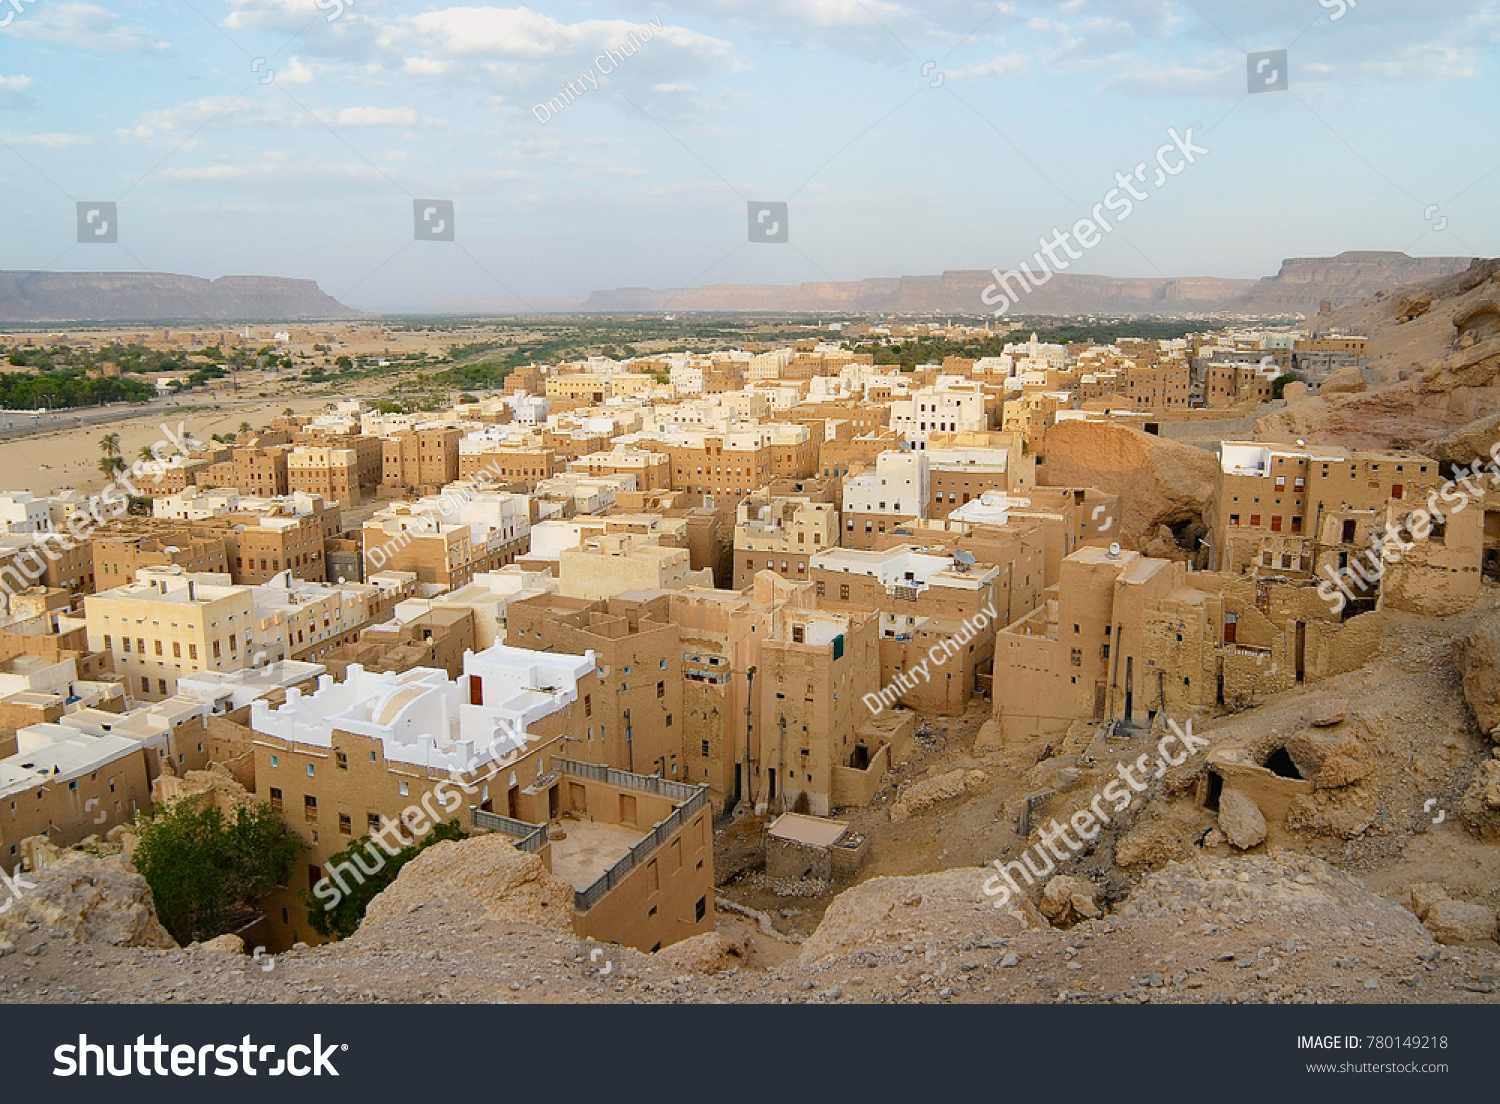 イエメンのハドラマウト渓谷にあるシバム町のタワーハウス ユネスコの世界遺産で 世界最古の高層ビル都市 砂漠のマンハッタン と呼ばれる場所が多い の写真素材 今すぐ編集